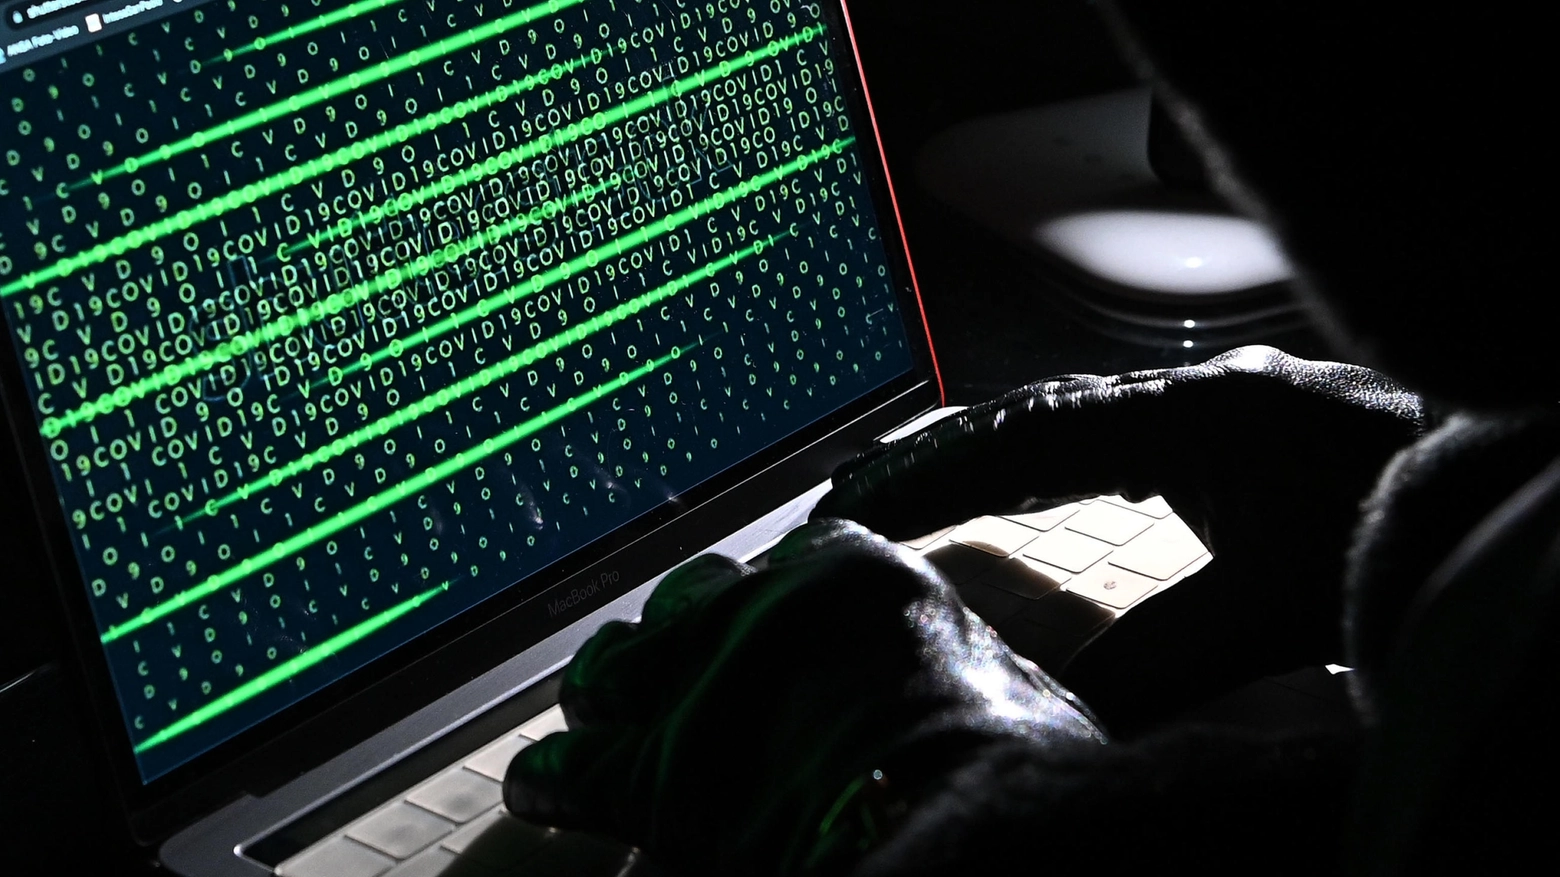 Attacco hacker in Comune a Torino